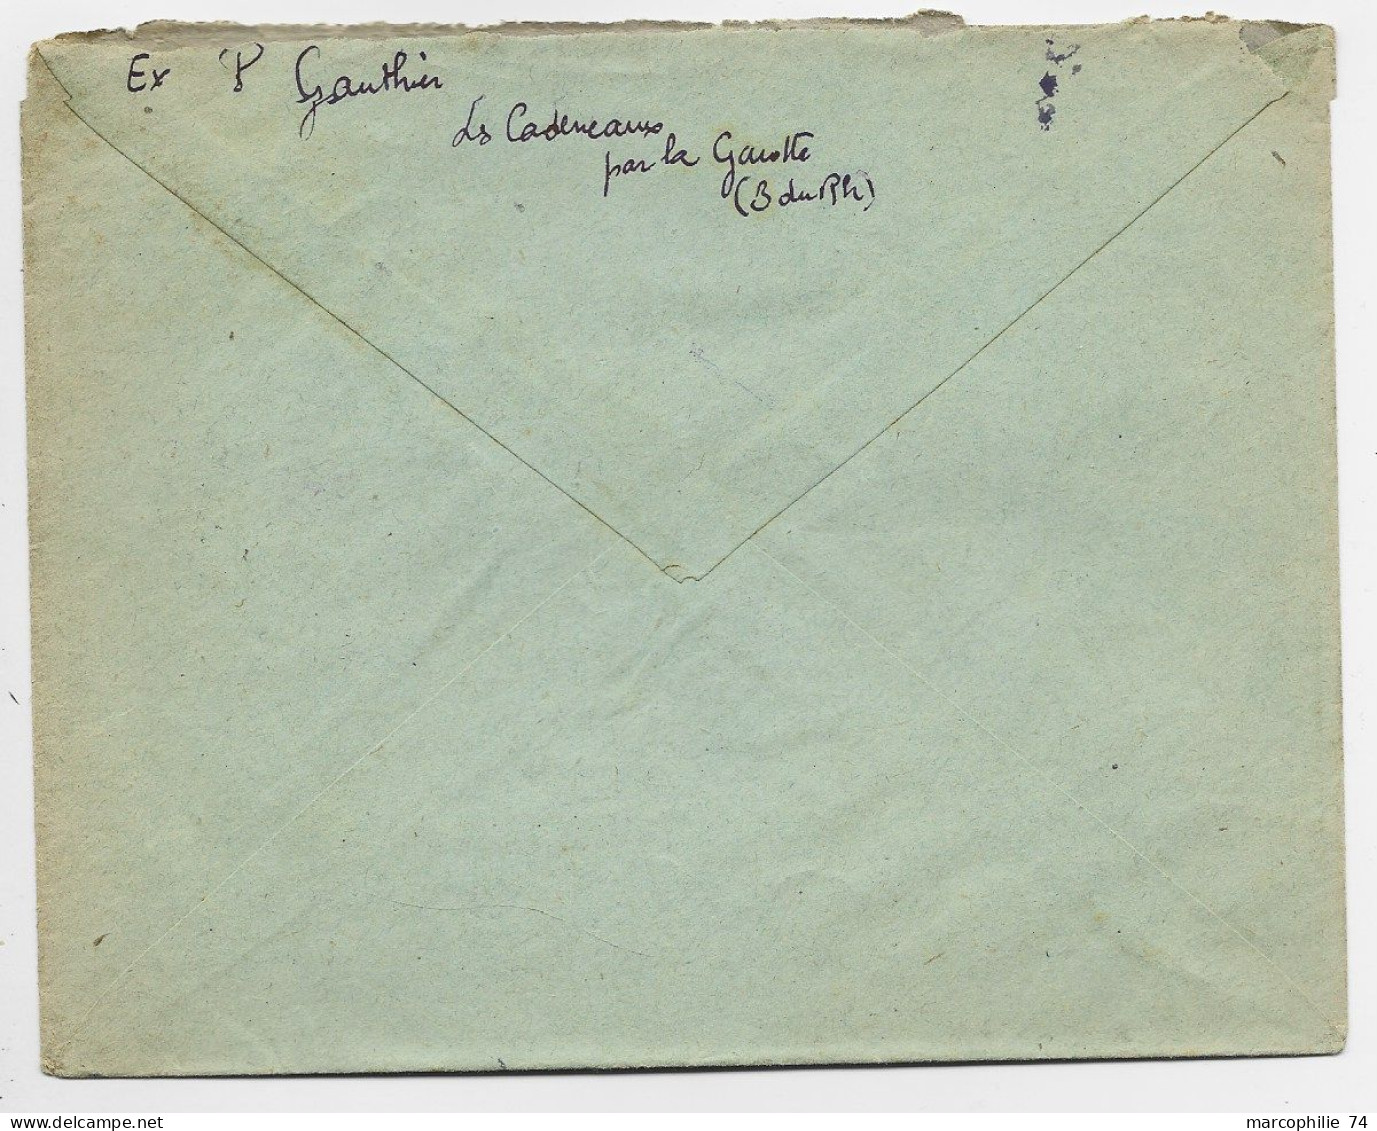 GANDON 5FR VERTX3 719 LETTRE REC PROVISOIRE C.PERLE LA GAVOTTE 5.4.1947 BCHES DU RHONE - 1945-54 Maríanne De Gandon